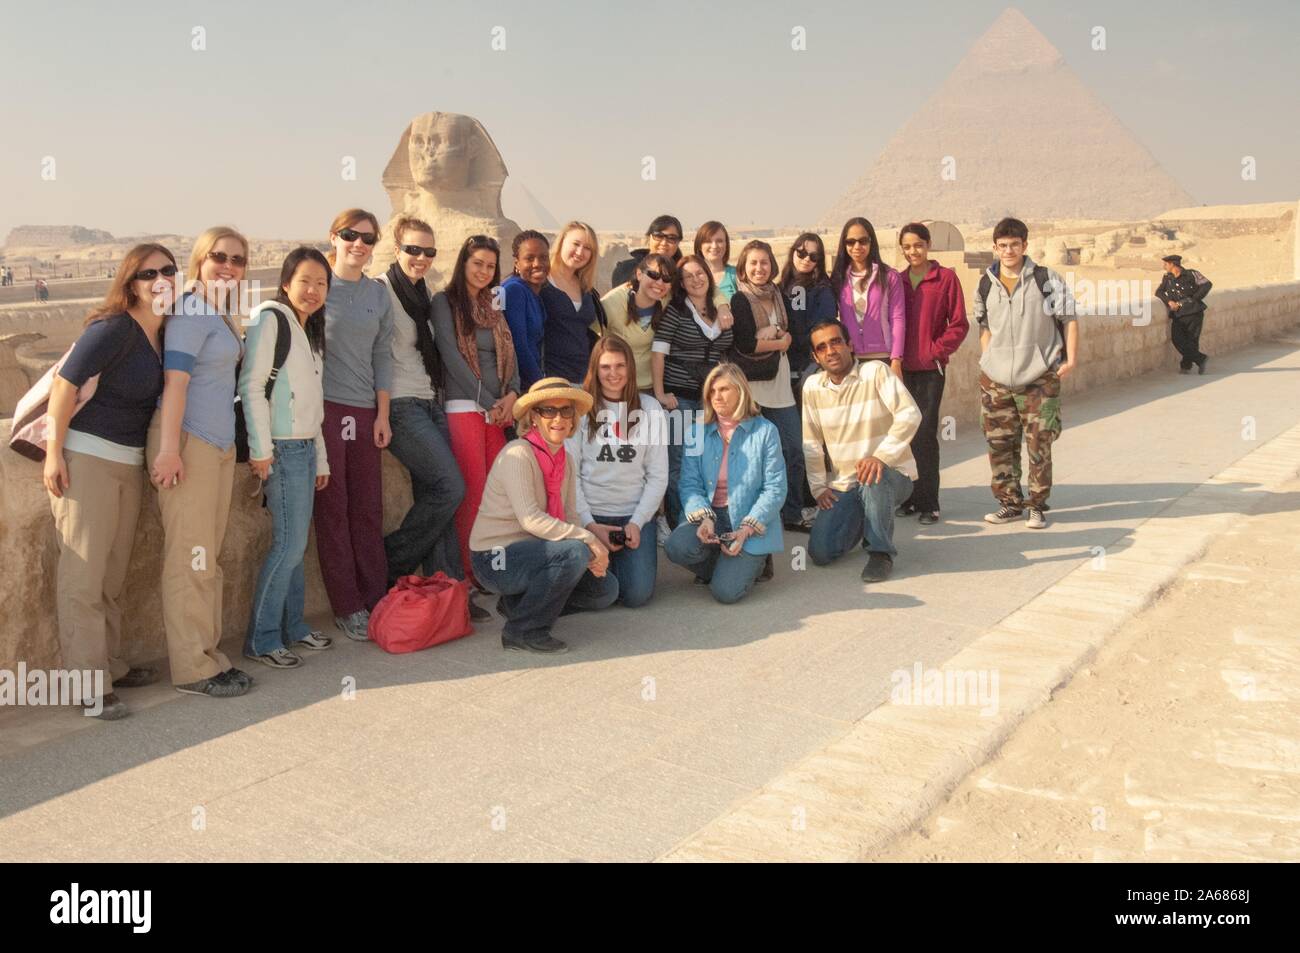 Égyptologue Betsy Bryan pose avec une rangée d'étudiants de l'Université Johns Hopkins, à l'extérieur par une journée ensoleillée, avec un muret en pierre, et avec le Sphinx et d'une pyramide visible à l'arrière-plan, Giza, Egypte au cours d'un programme d'études à l'étranger, le 7 janvier 2008. À partir de la collection photographique de Homewood. () Banque D'Images